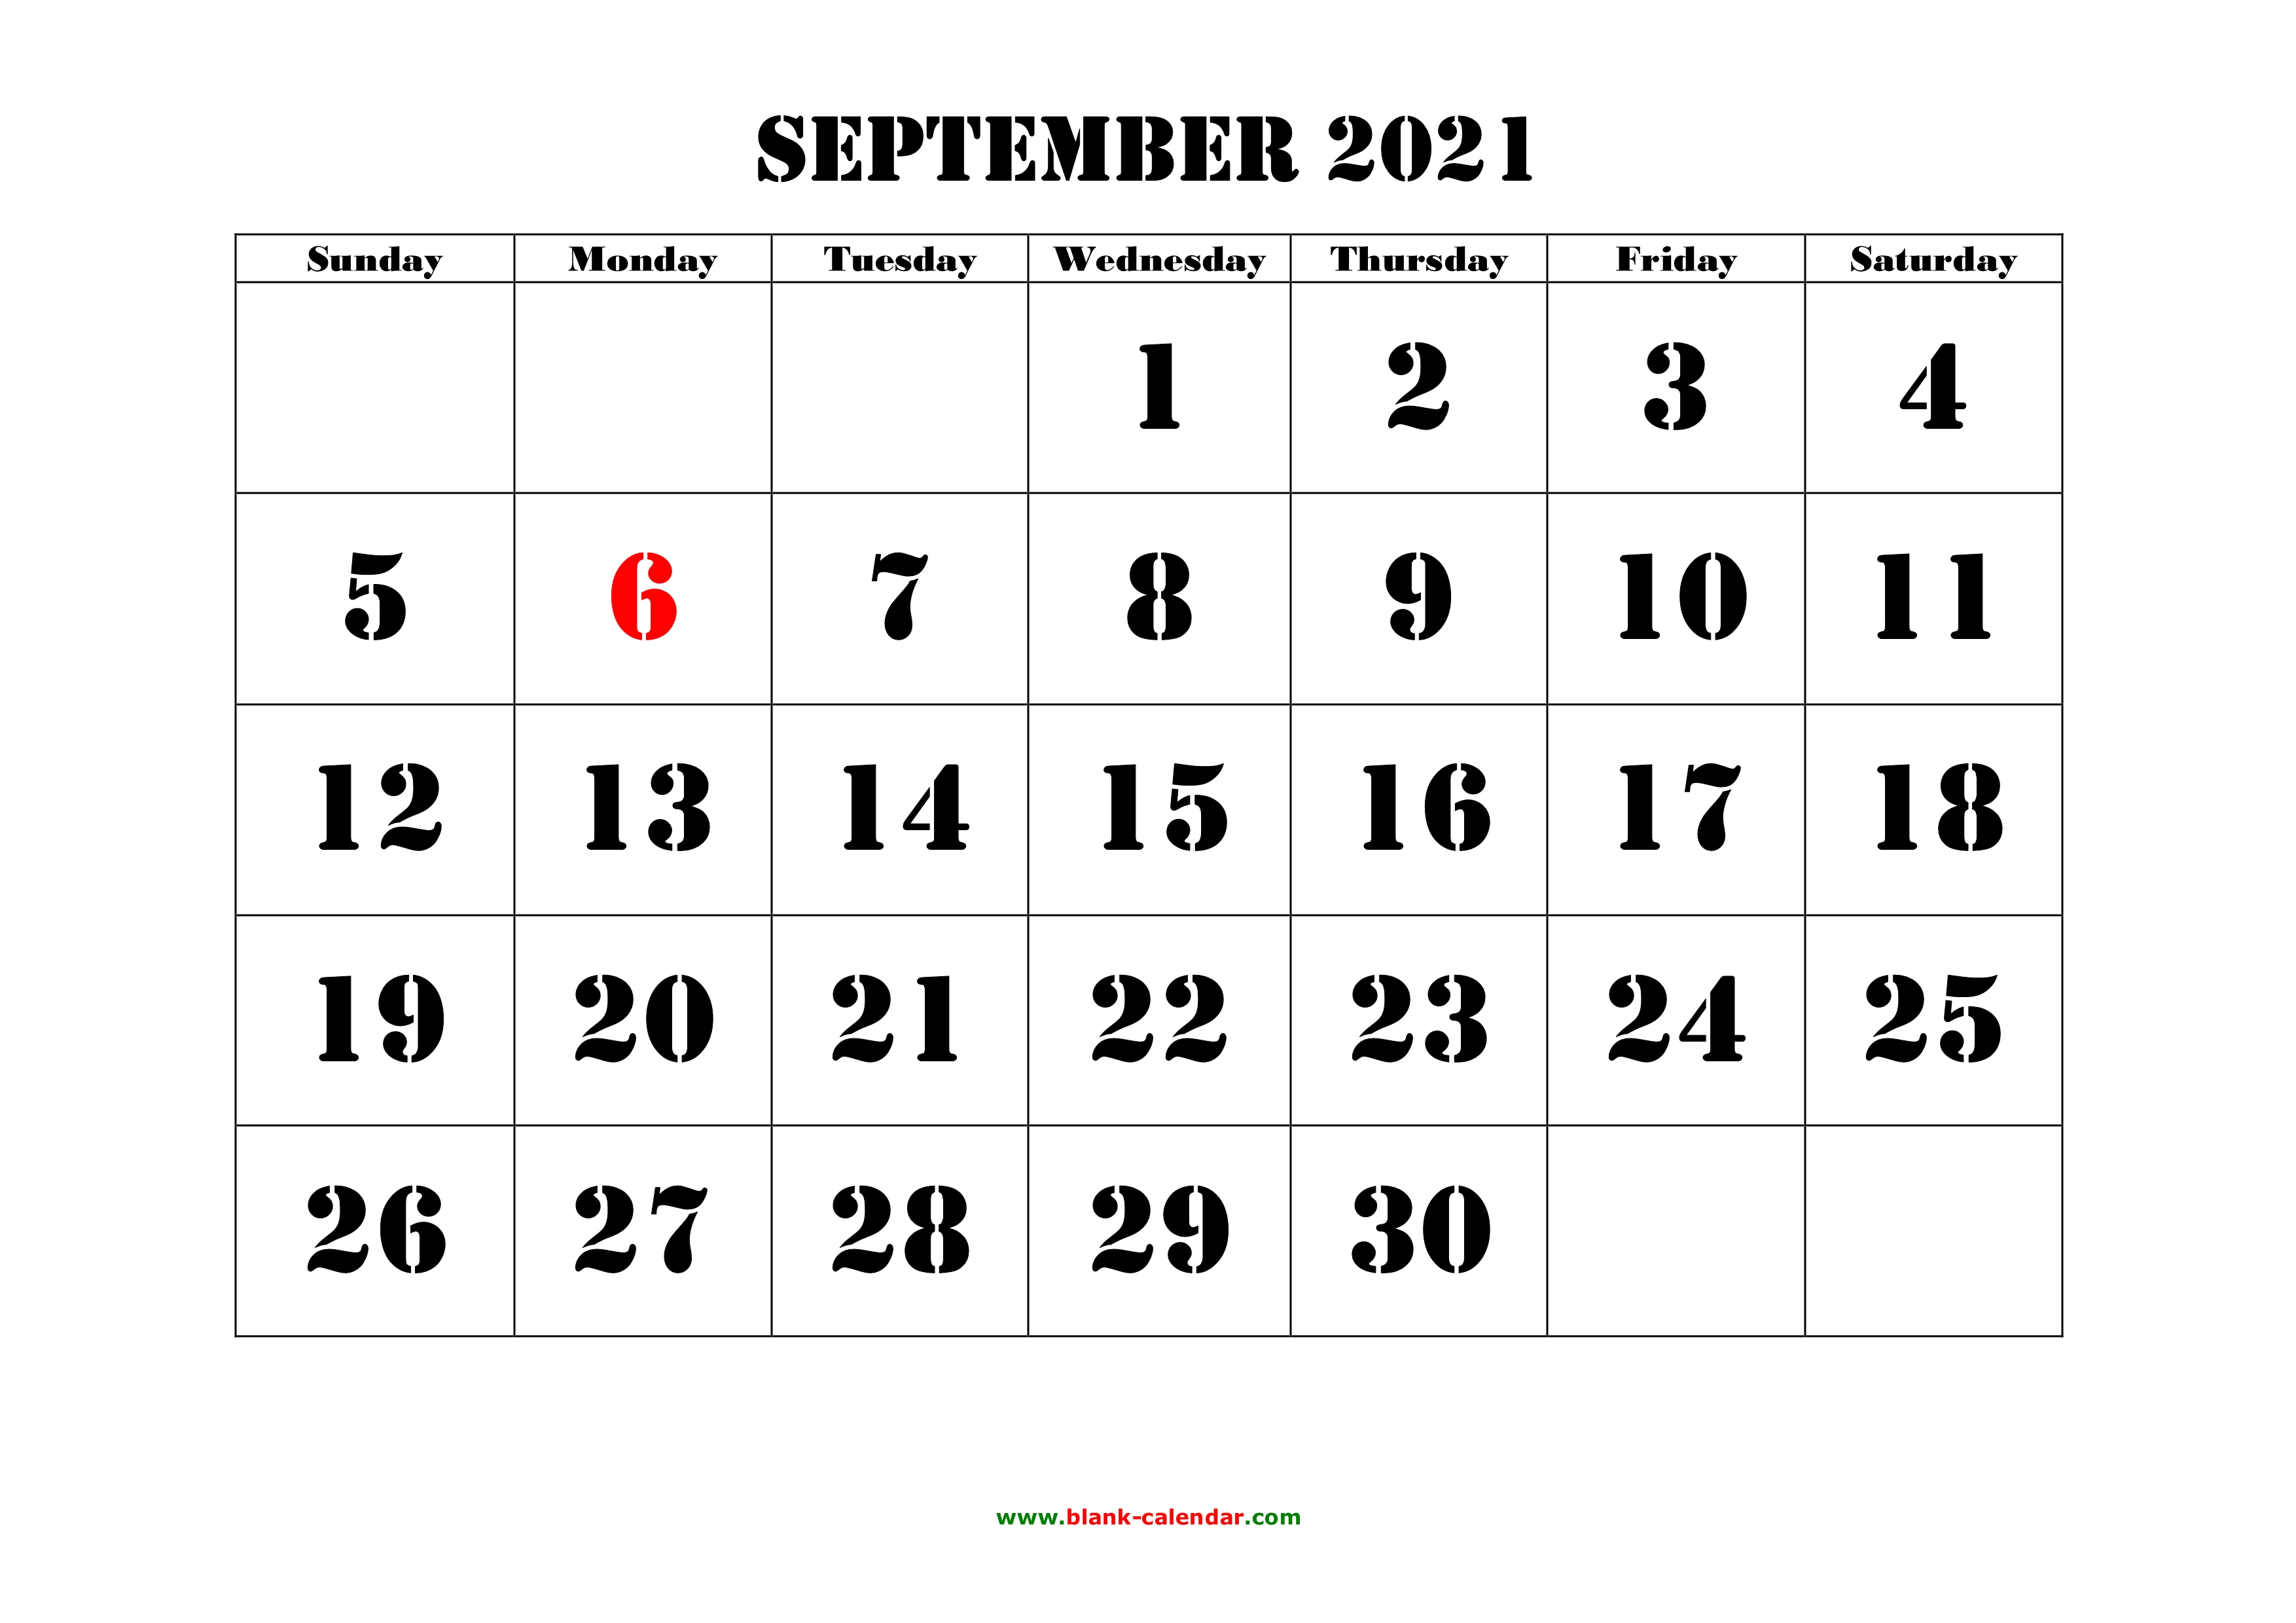 2021 Sepeltember Calendar 2021 Calendar